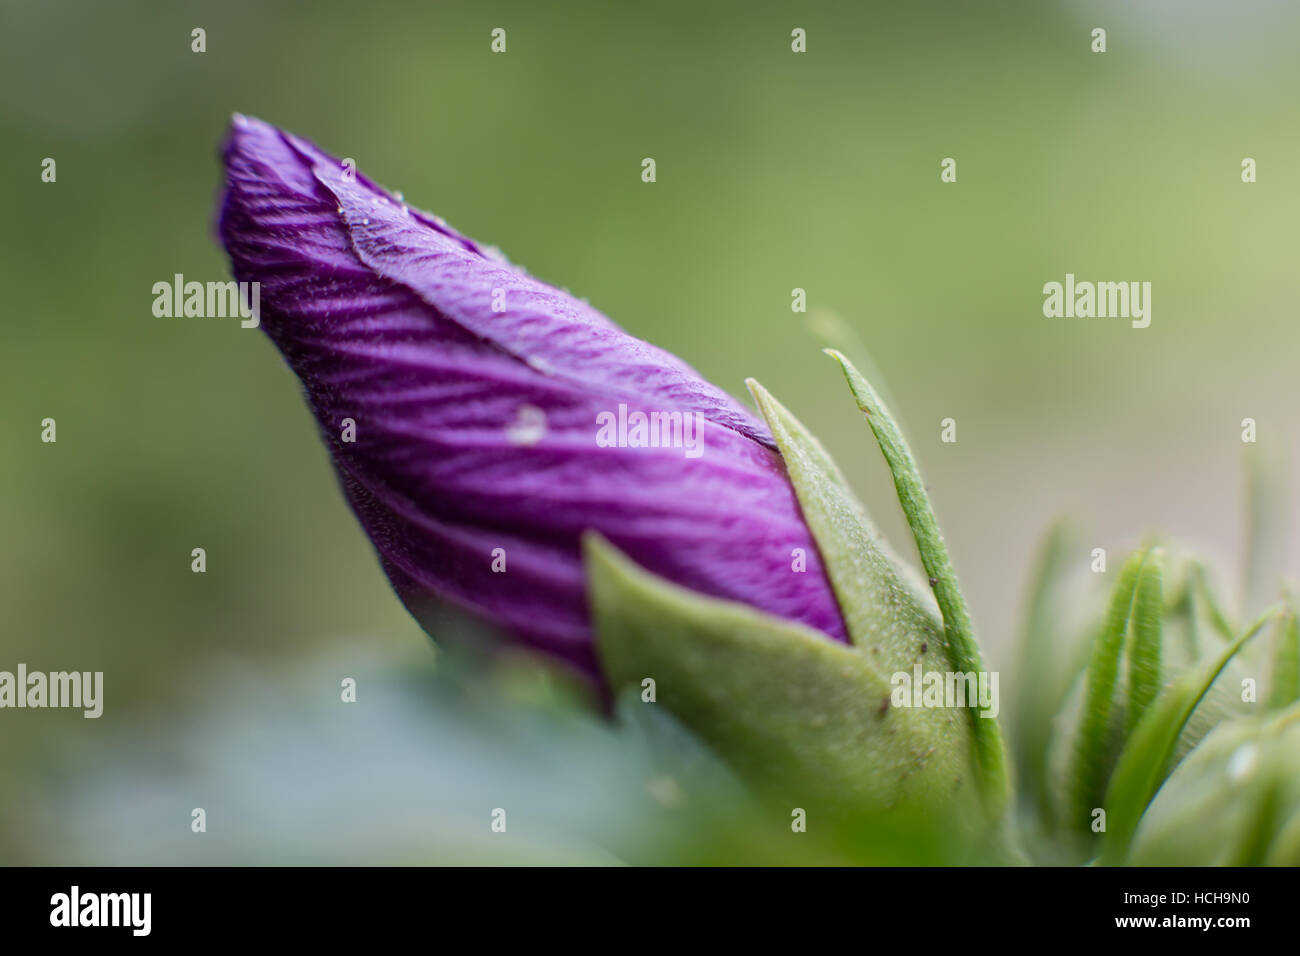 Chiuso purple rosa di Sharon germoglio di fiore che mostra la texture nella spirale arricciata di petali Foto Stock